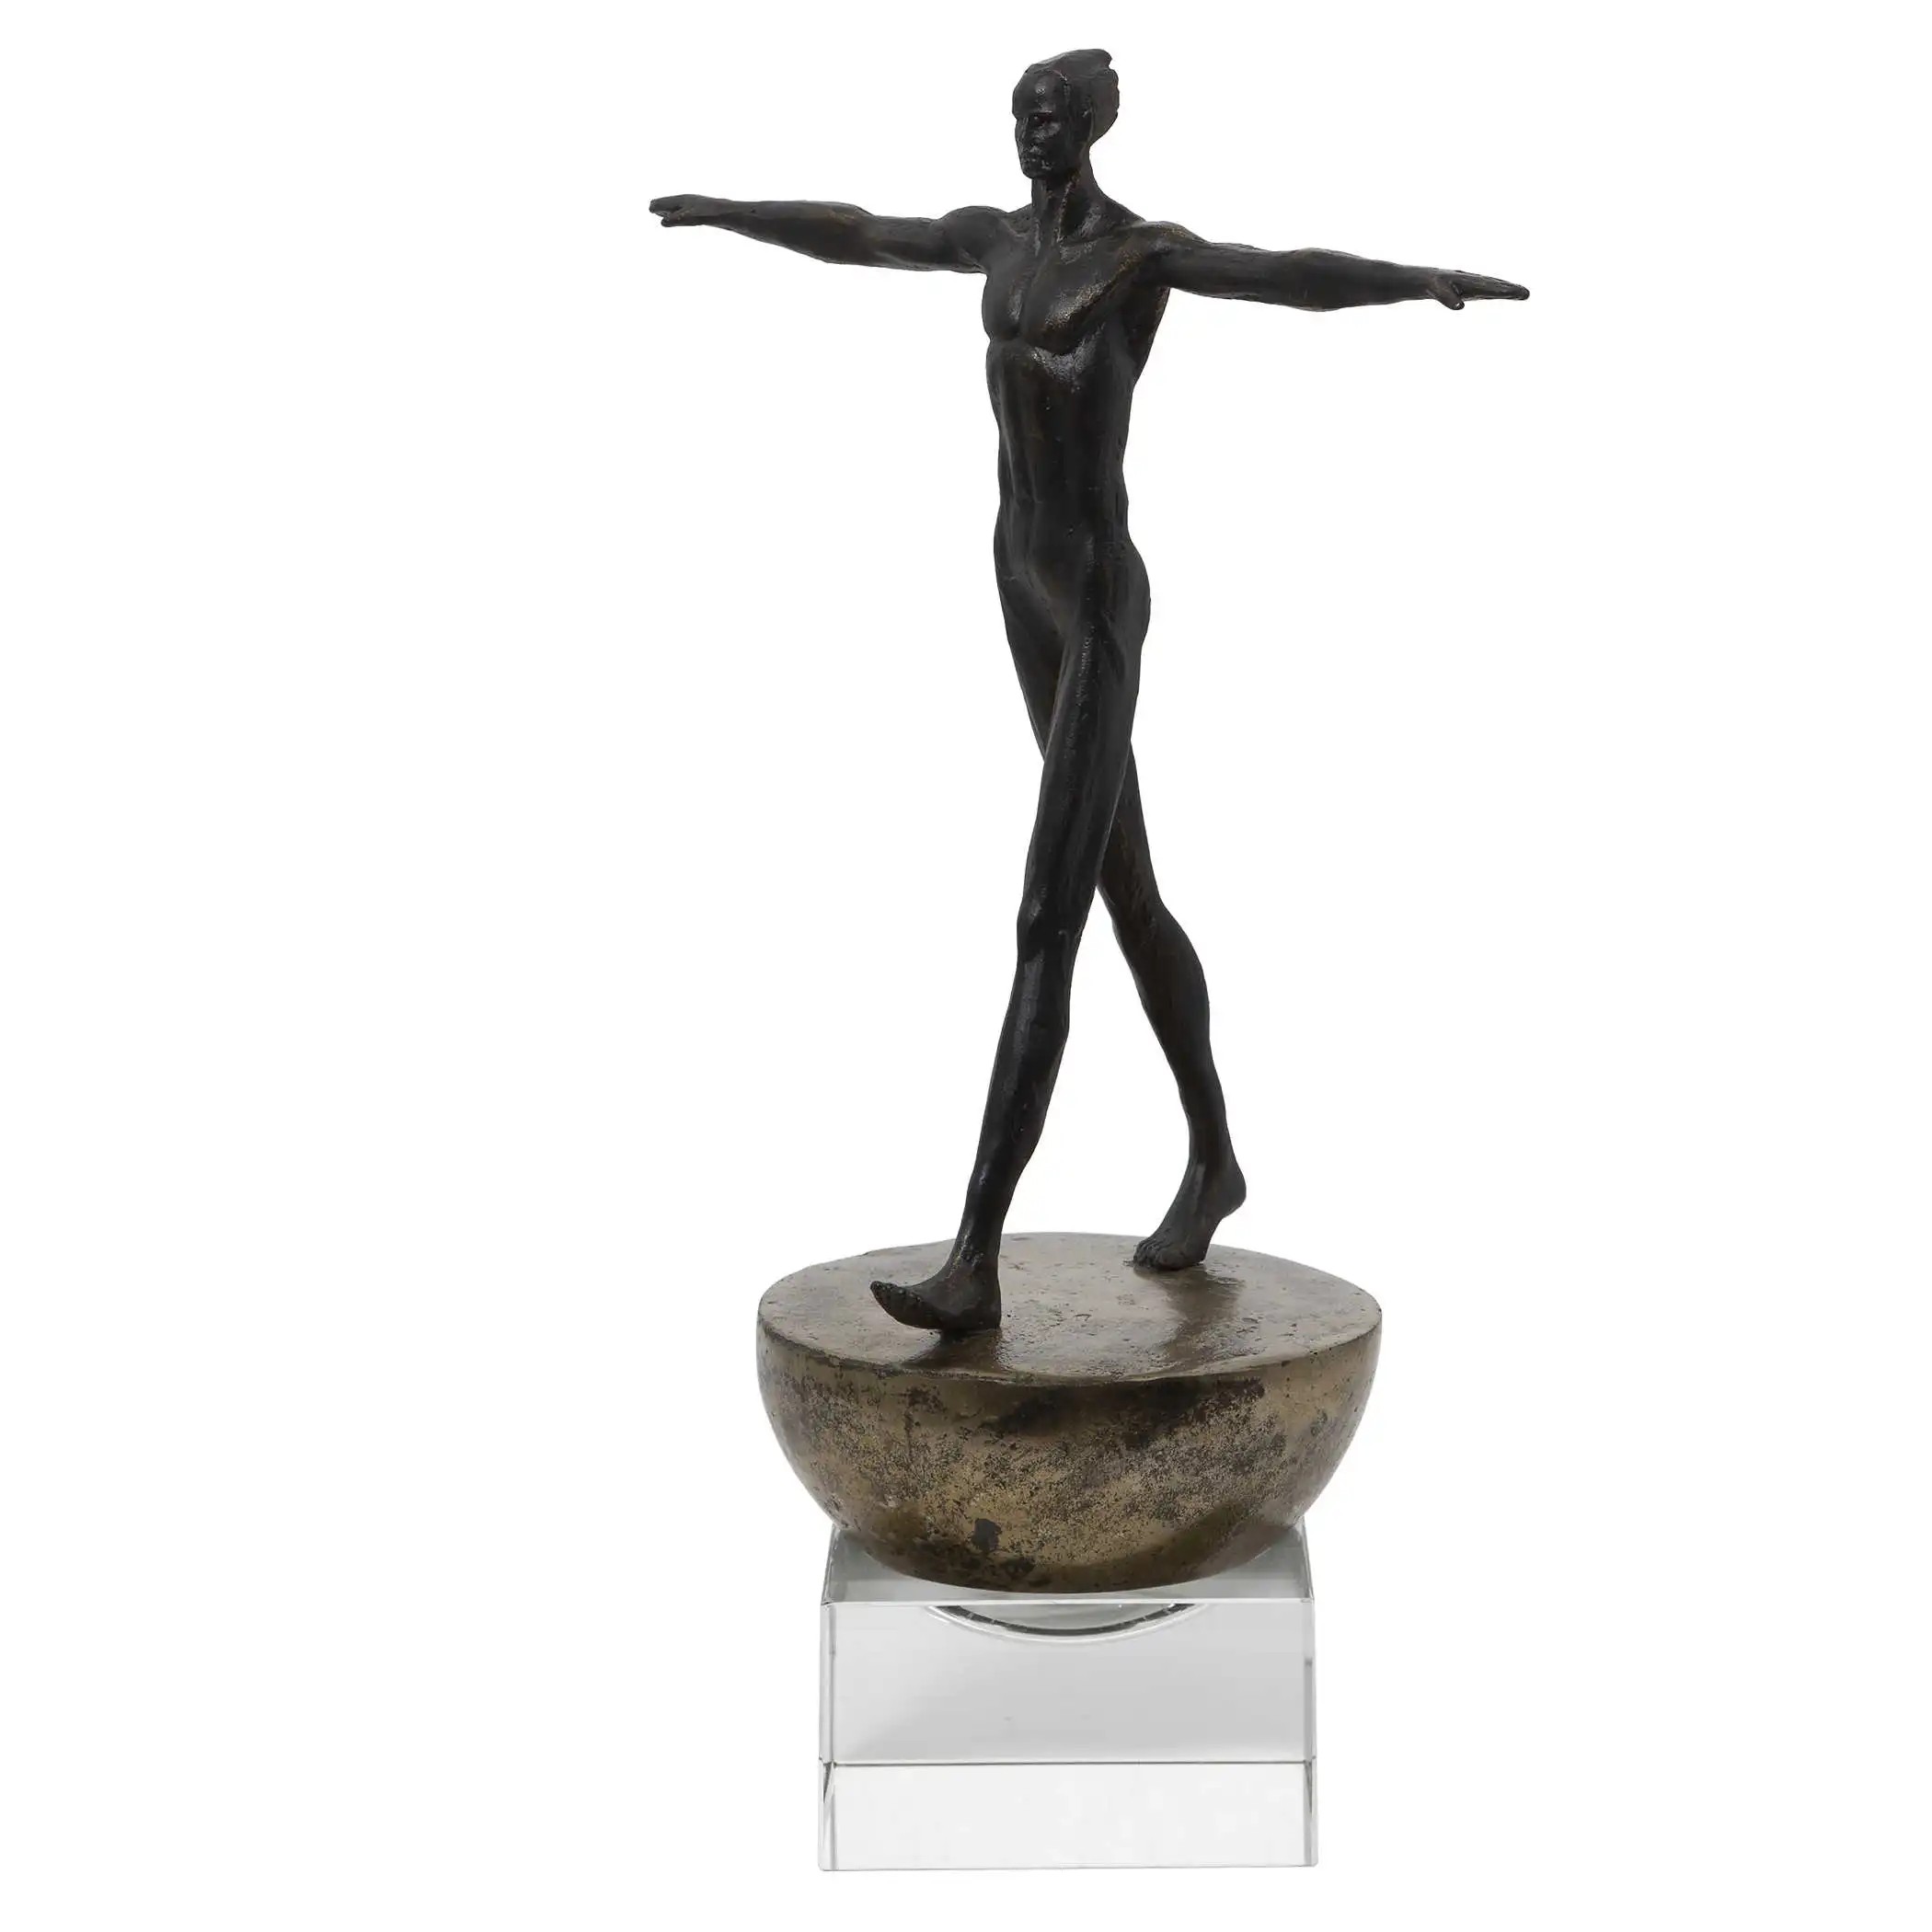 Finding Balance Sculpture - Man